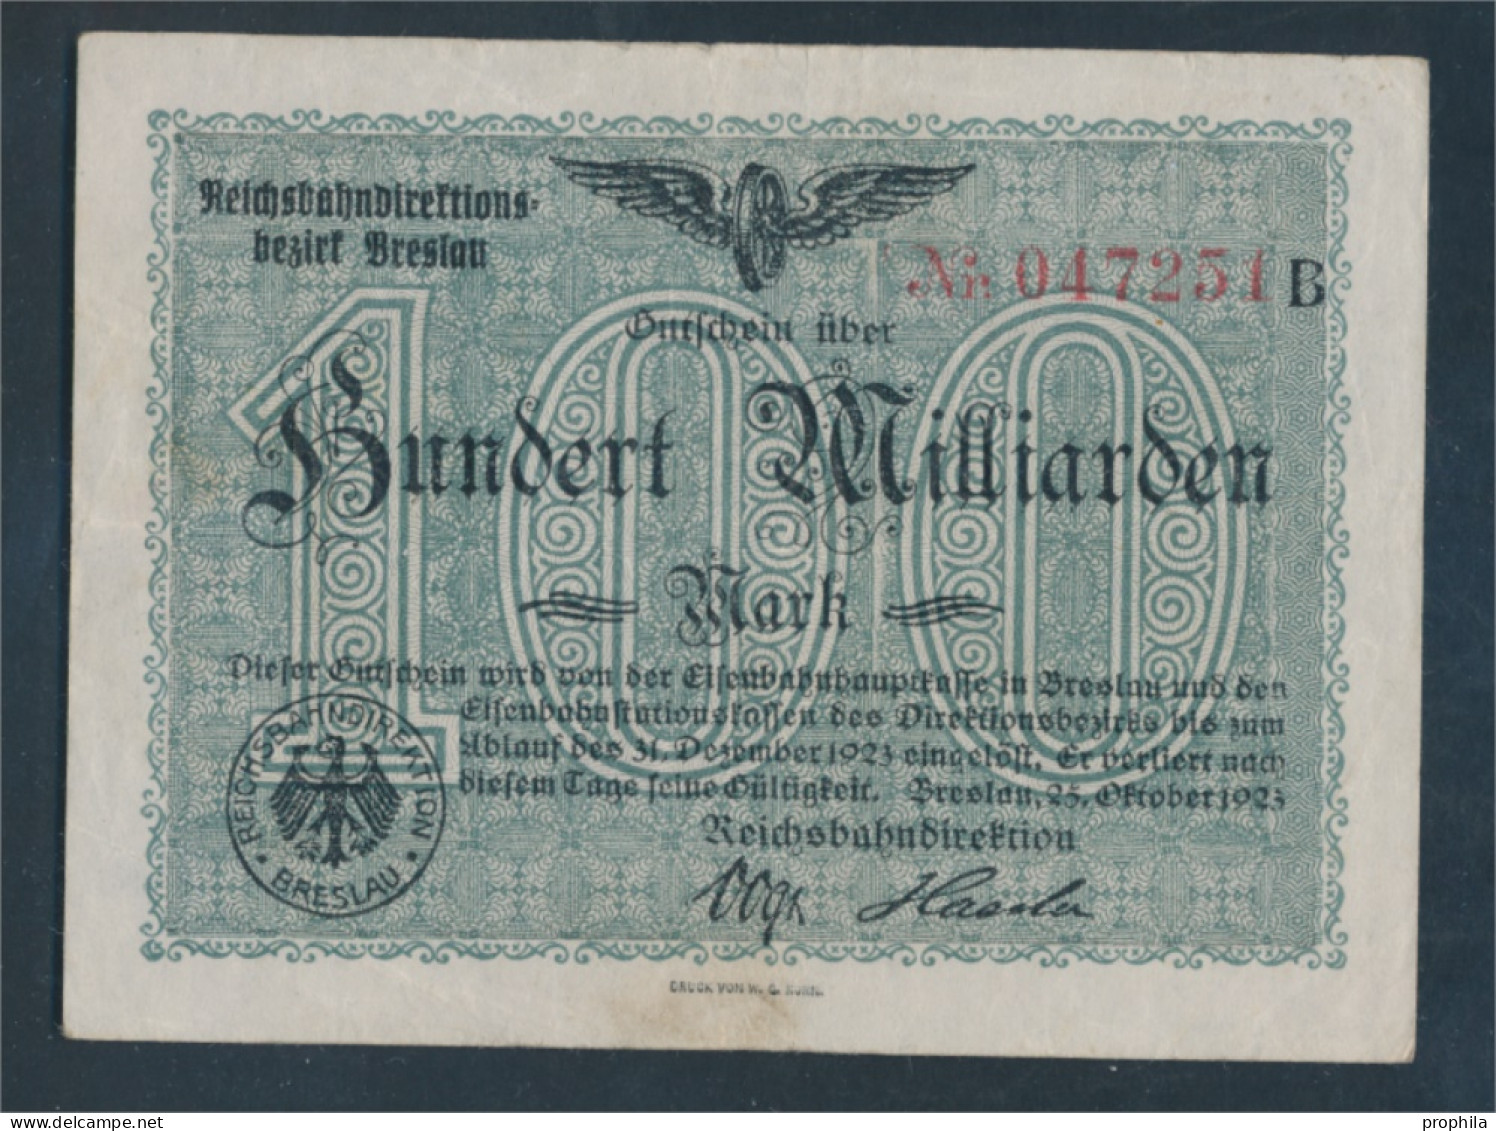 Breslau Pick-Nr: S1140 Inflationsgeld Der Deutschen Reichsbahn Breslau Gebraucht (III) 1923 100 Milliarden Mar (10288421 - 100 Mrd. Mark